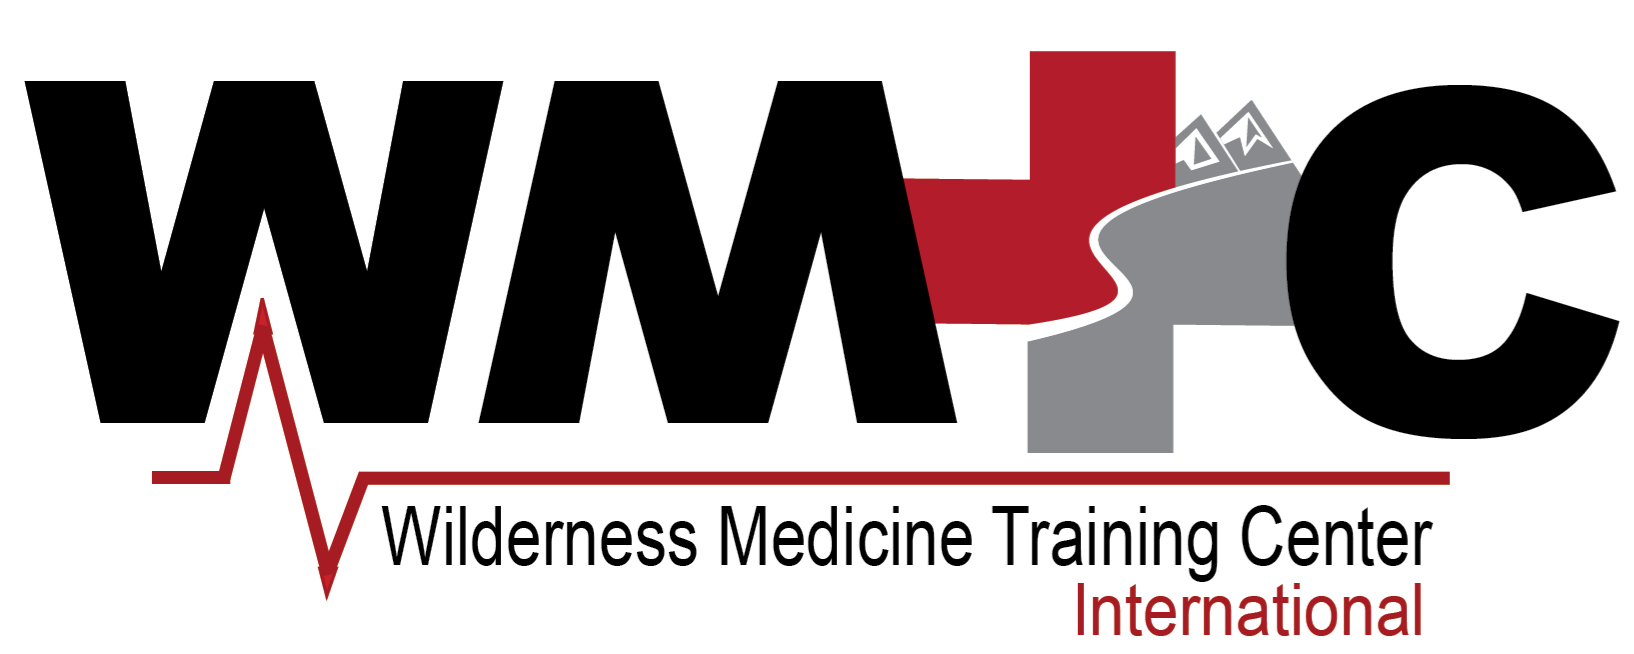 Wilderness Medicine Training Center